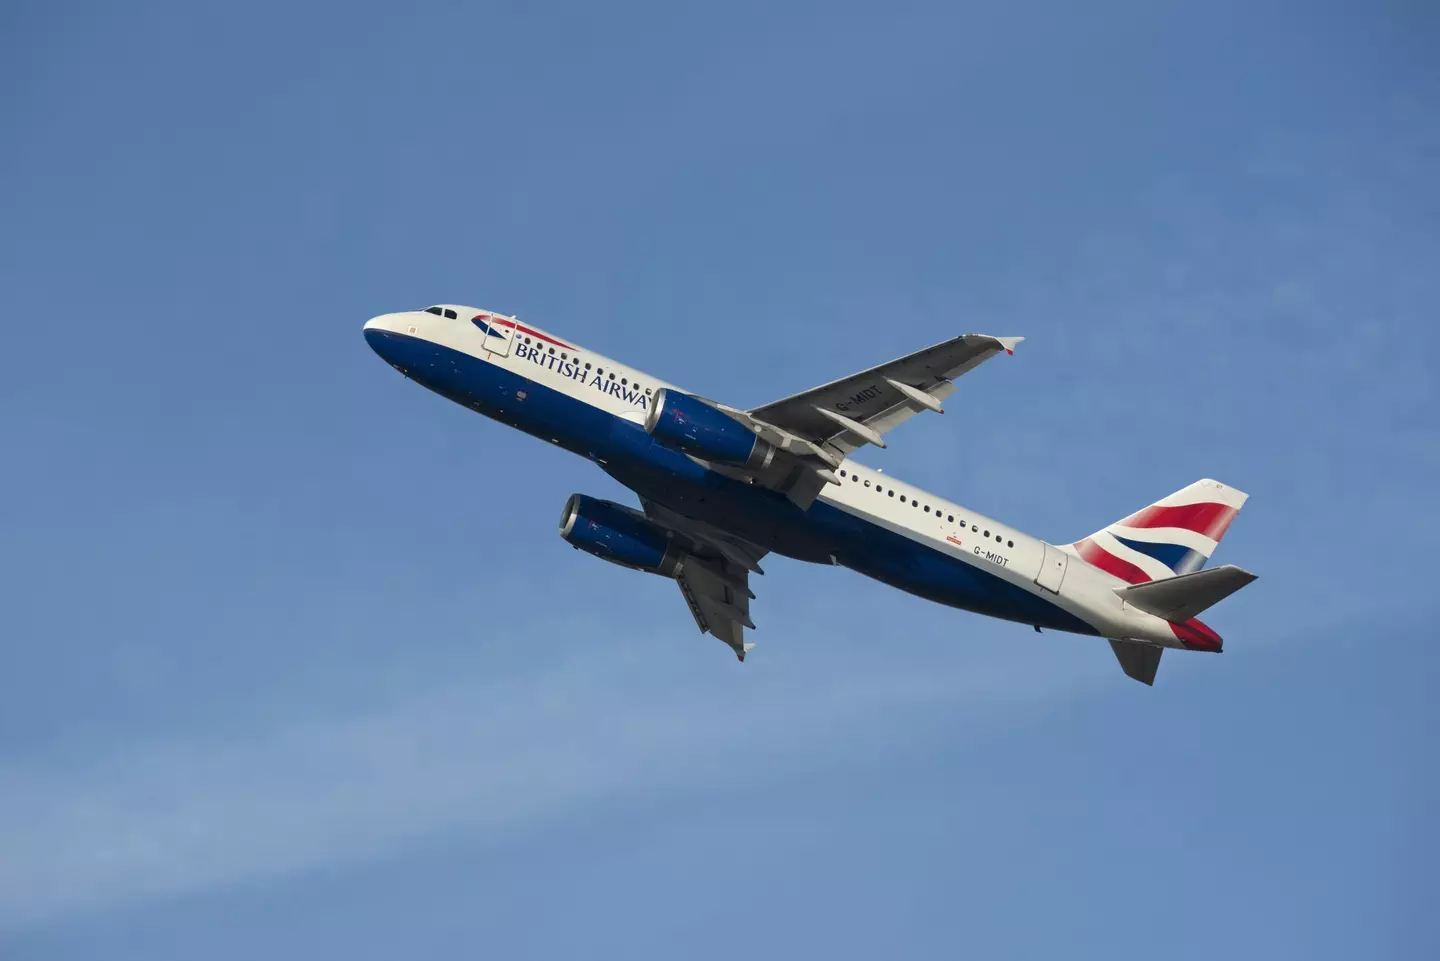 A British Airways flight.